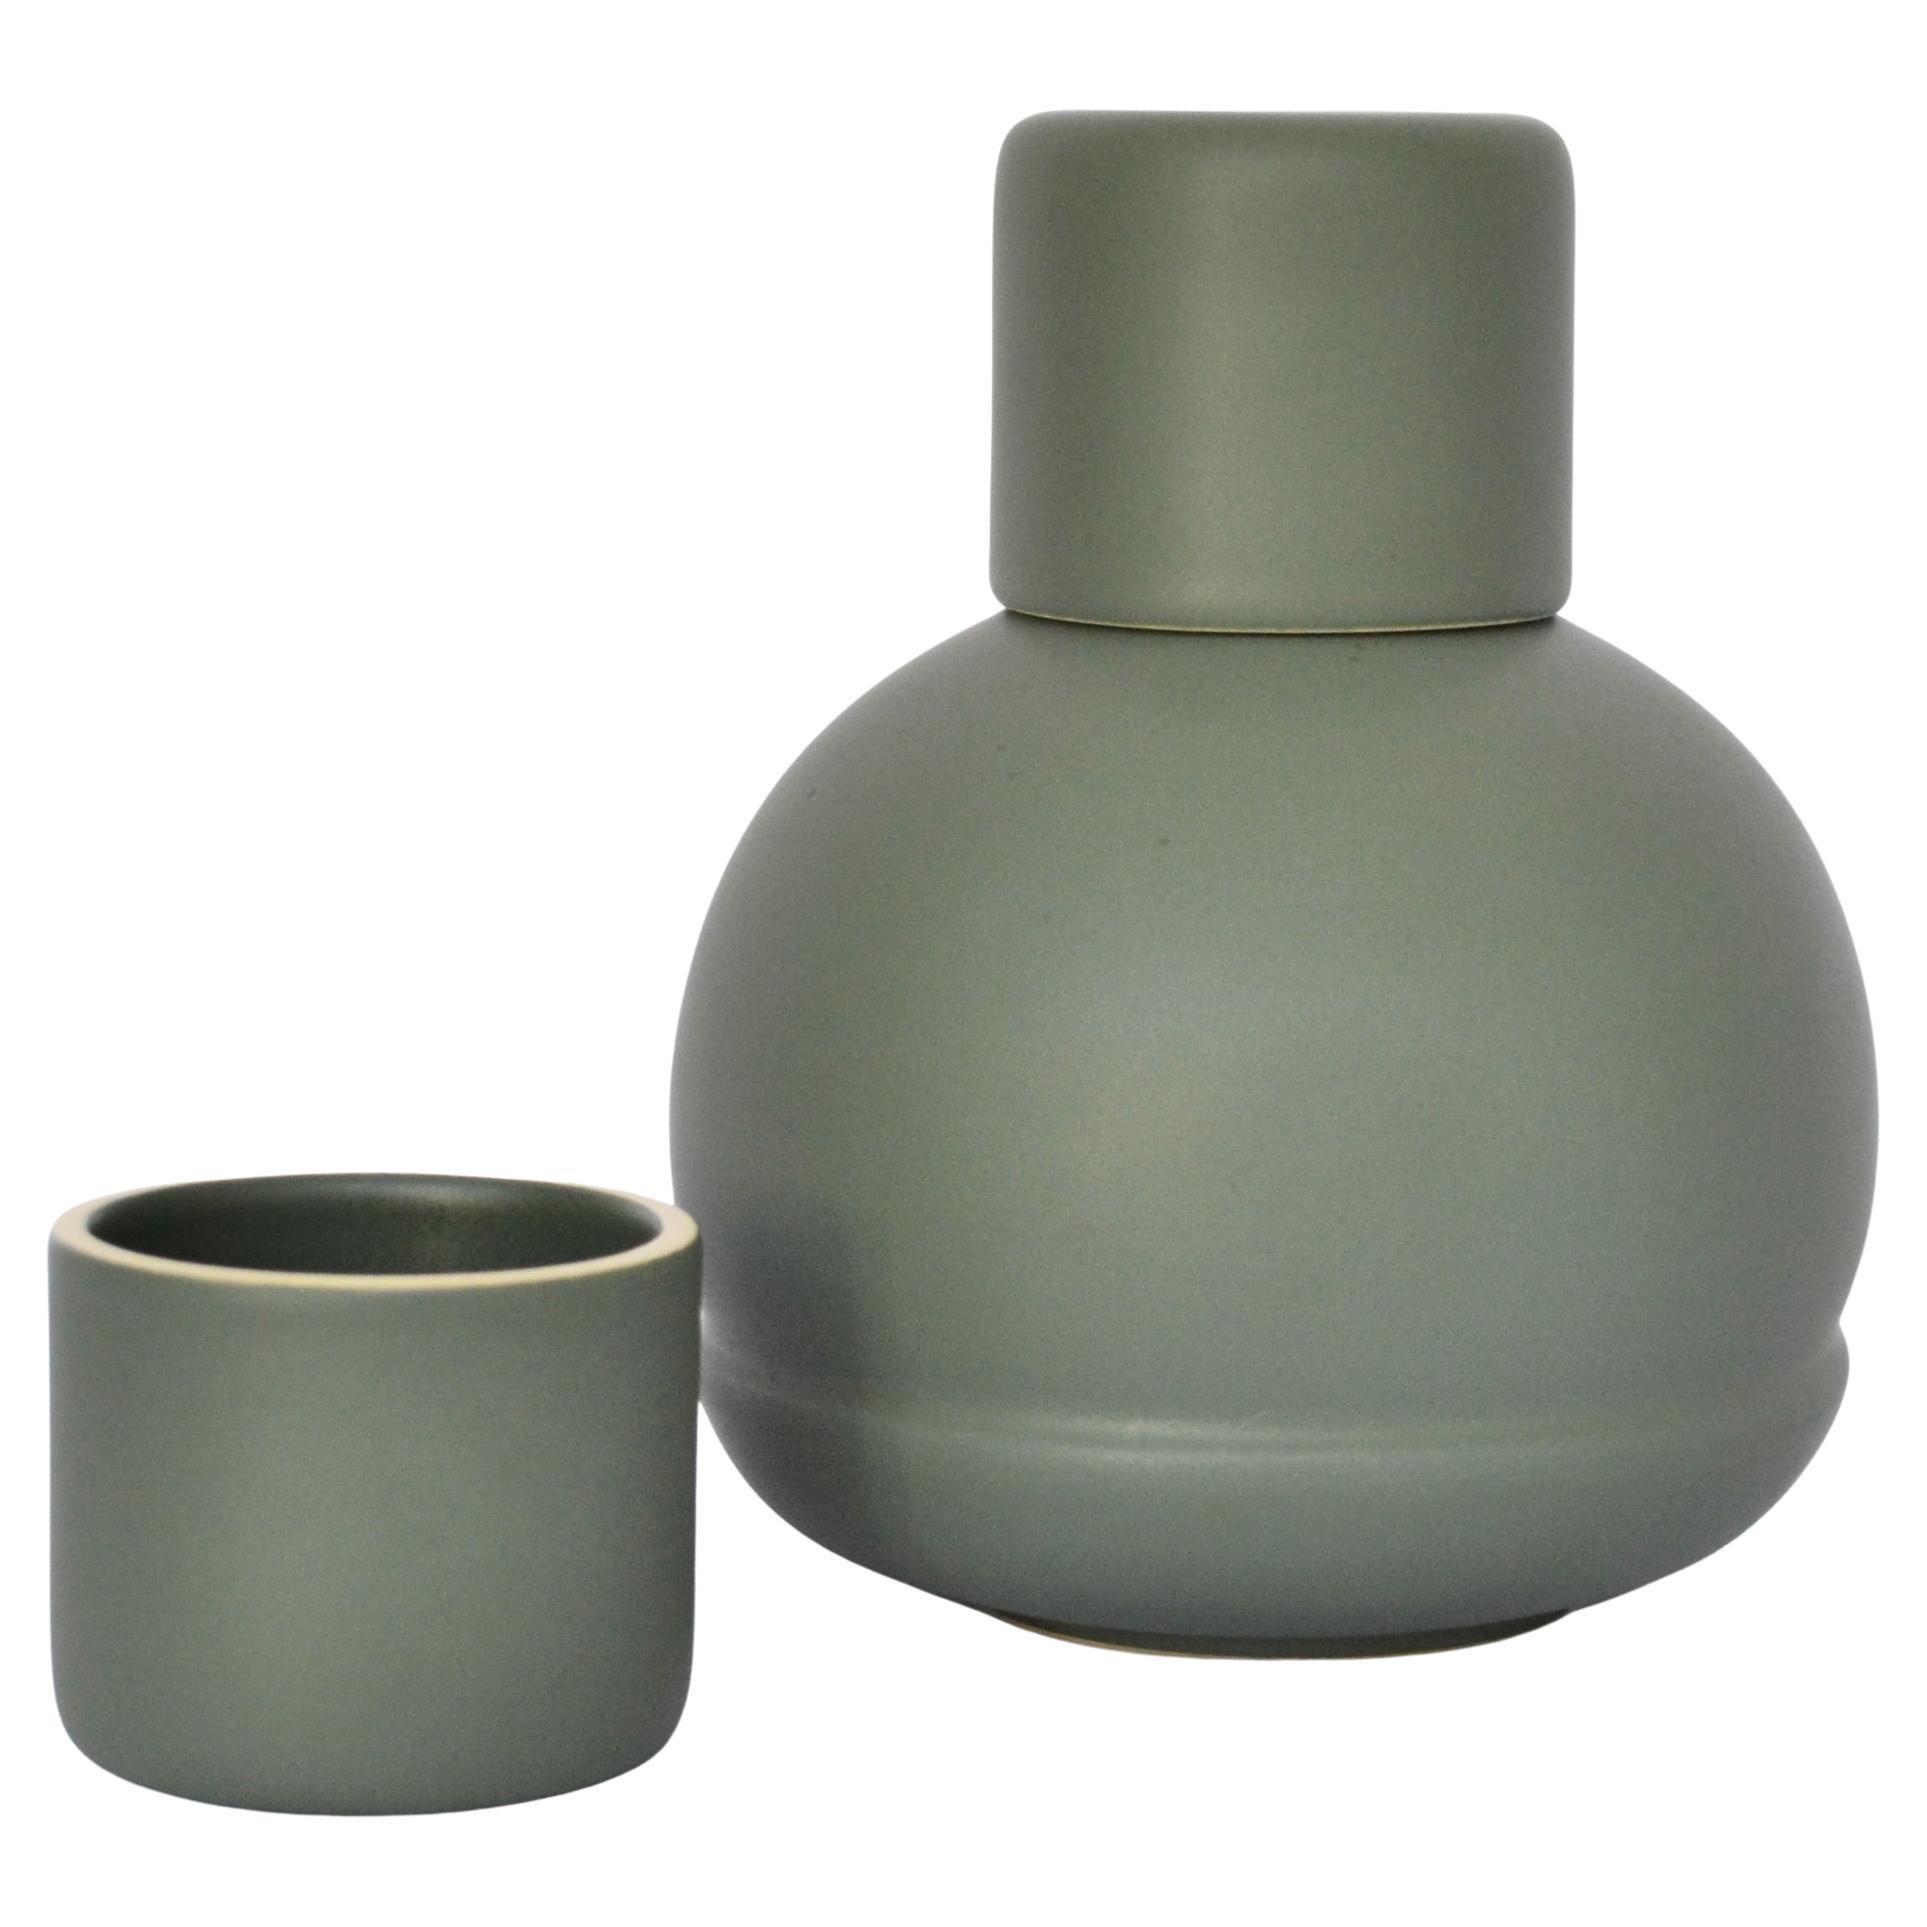 Grünes Karaffen und Gläser. Inspiriert von traditionellen Keramikkaraffen.  